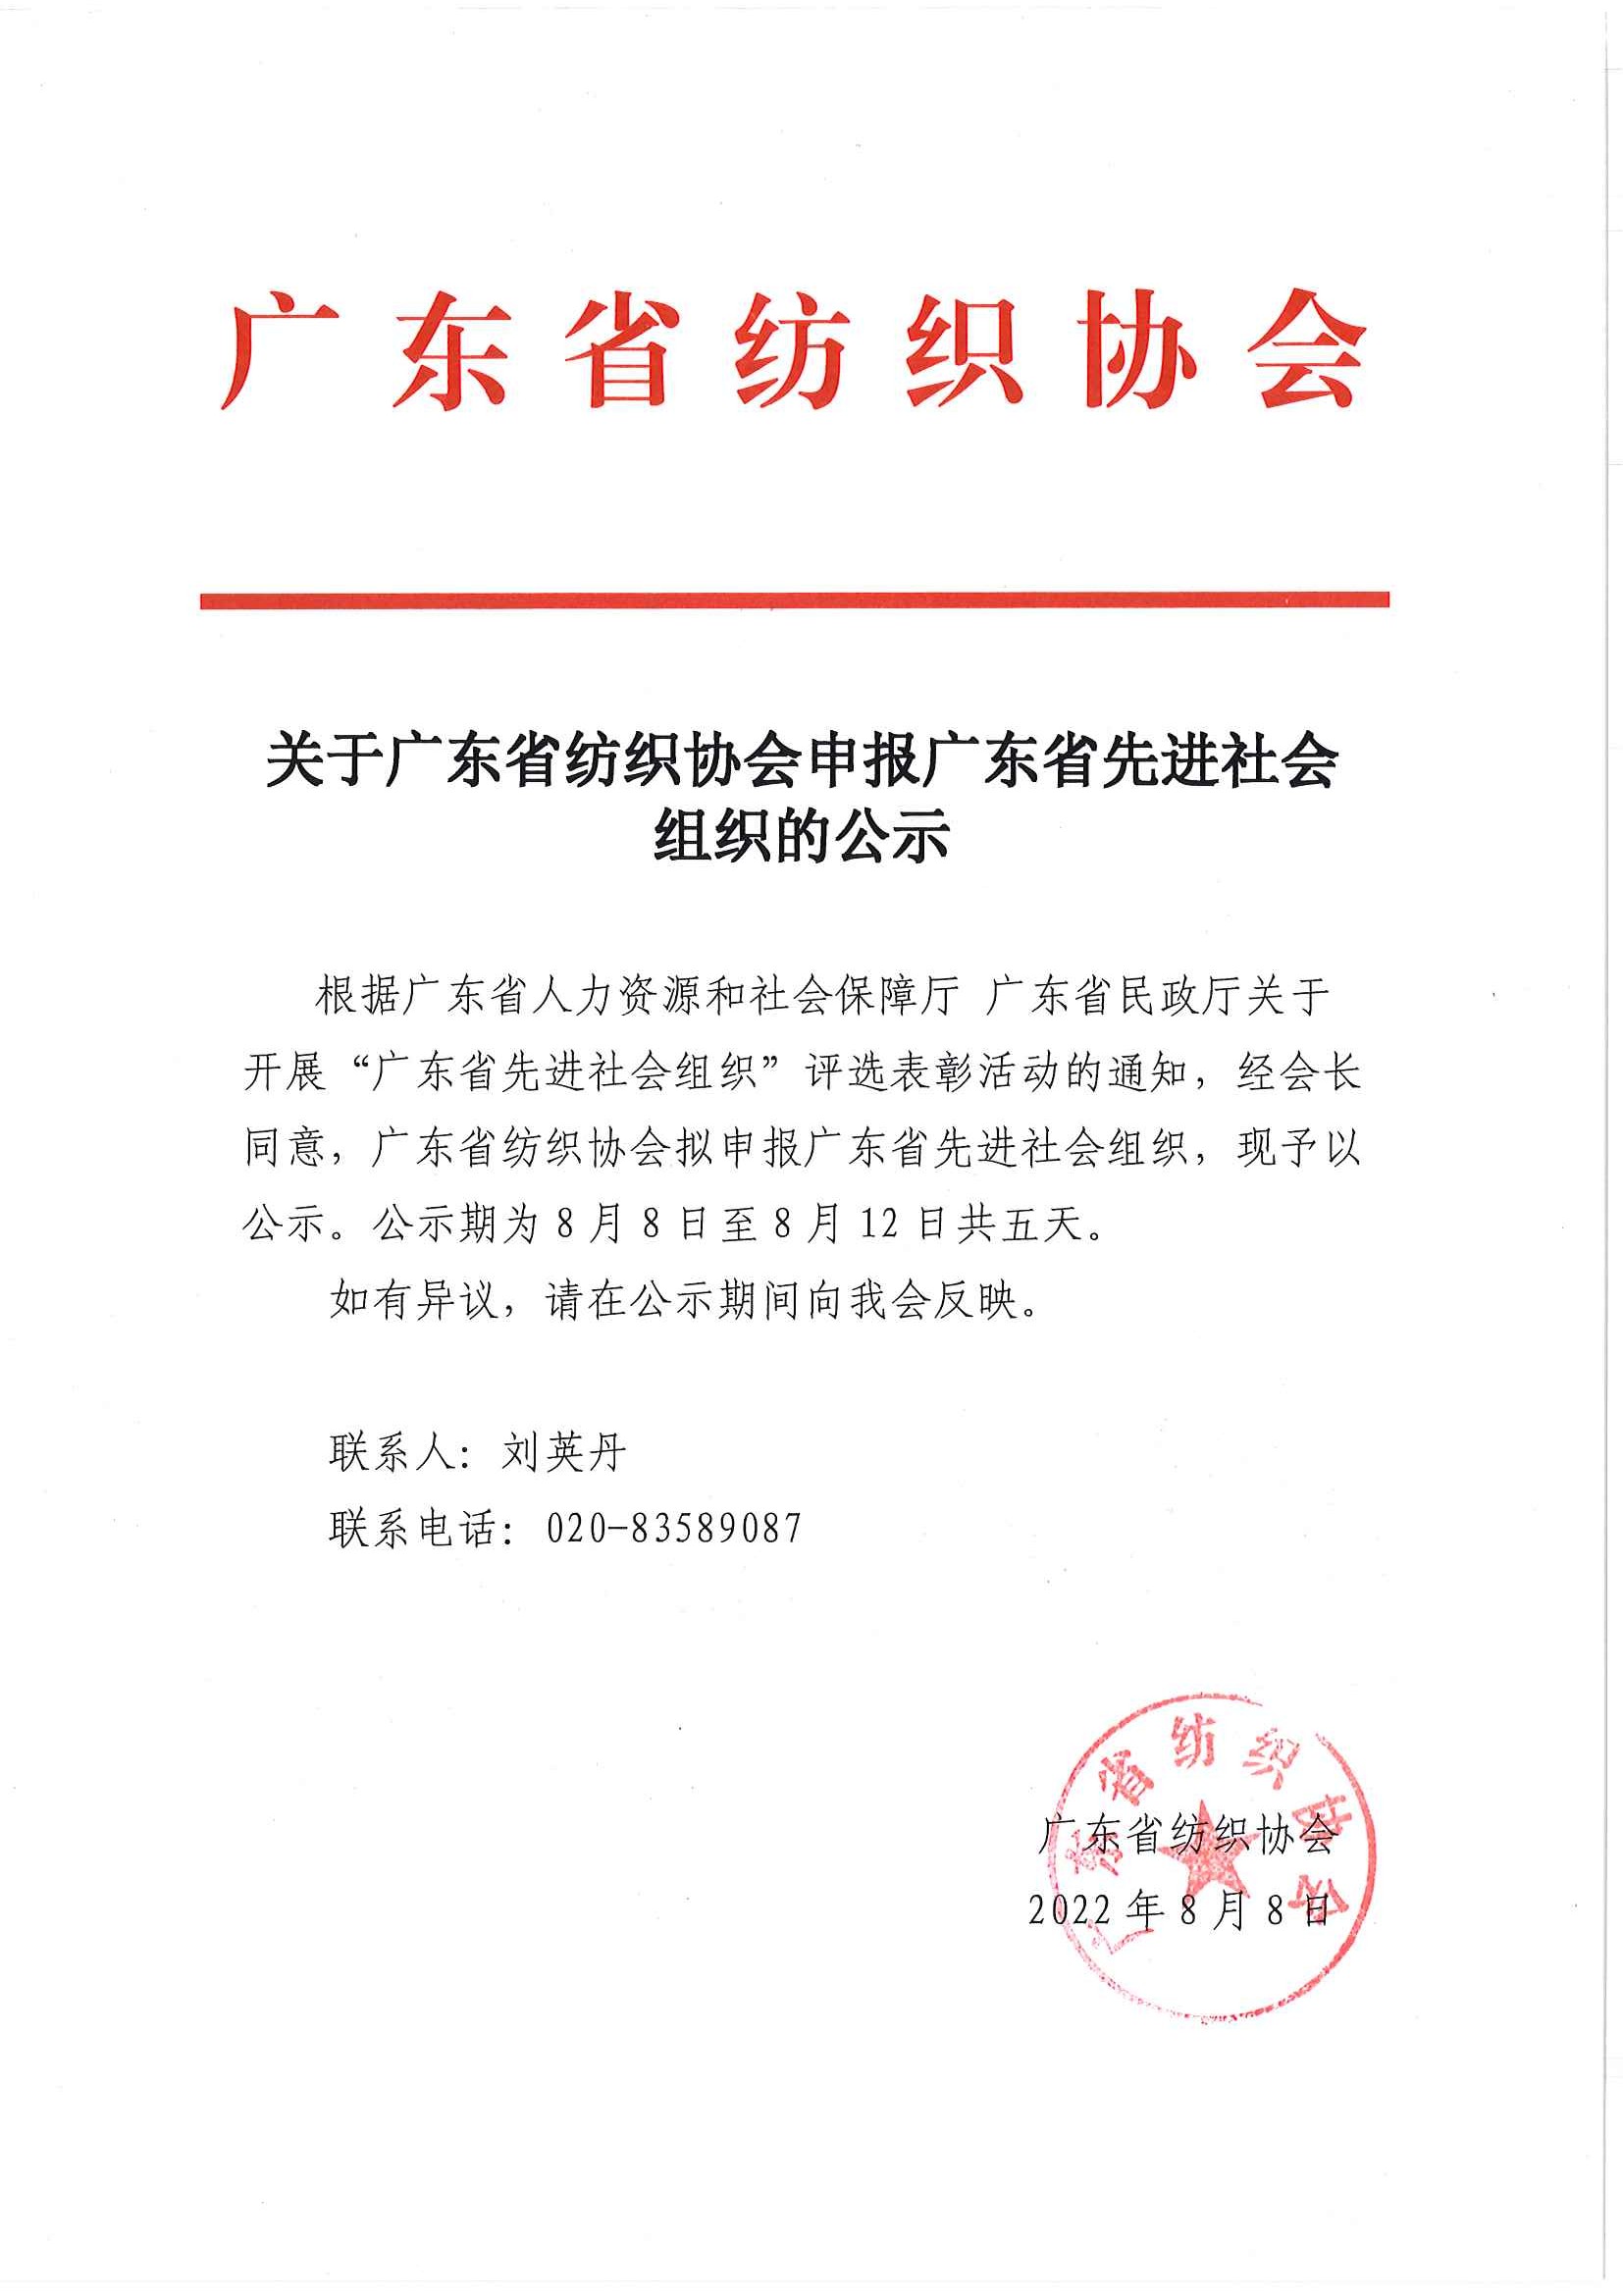 关于广东省纺织协会申报广东省先进社会组织的公示.jpg